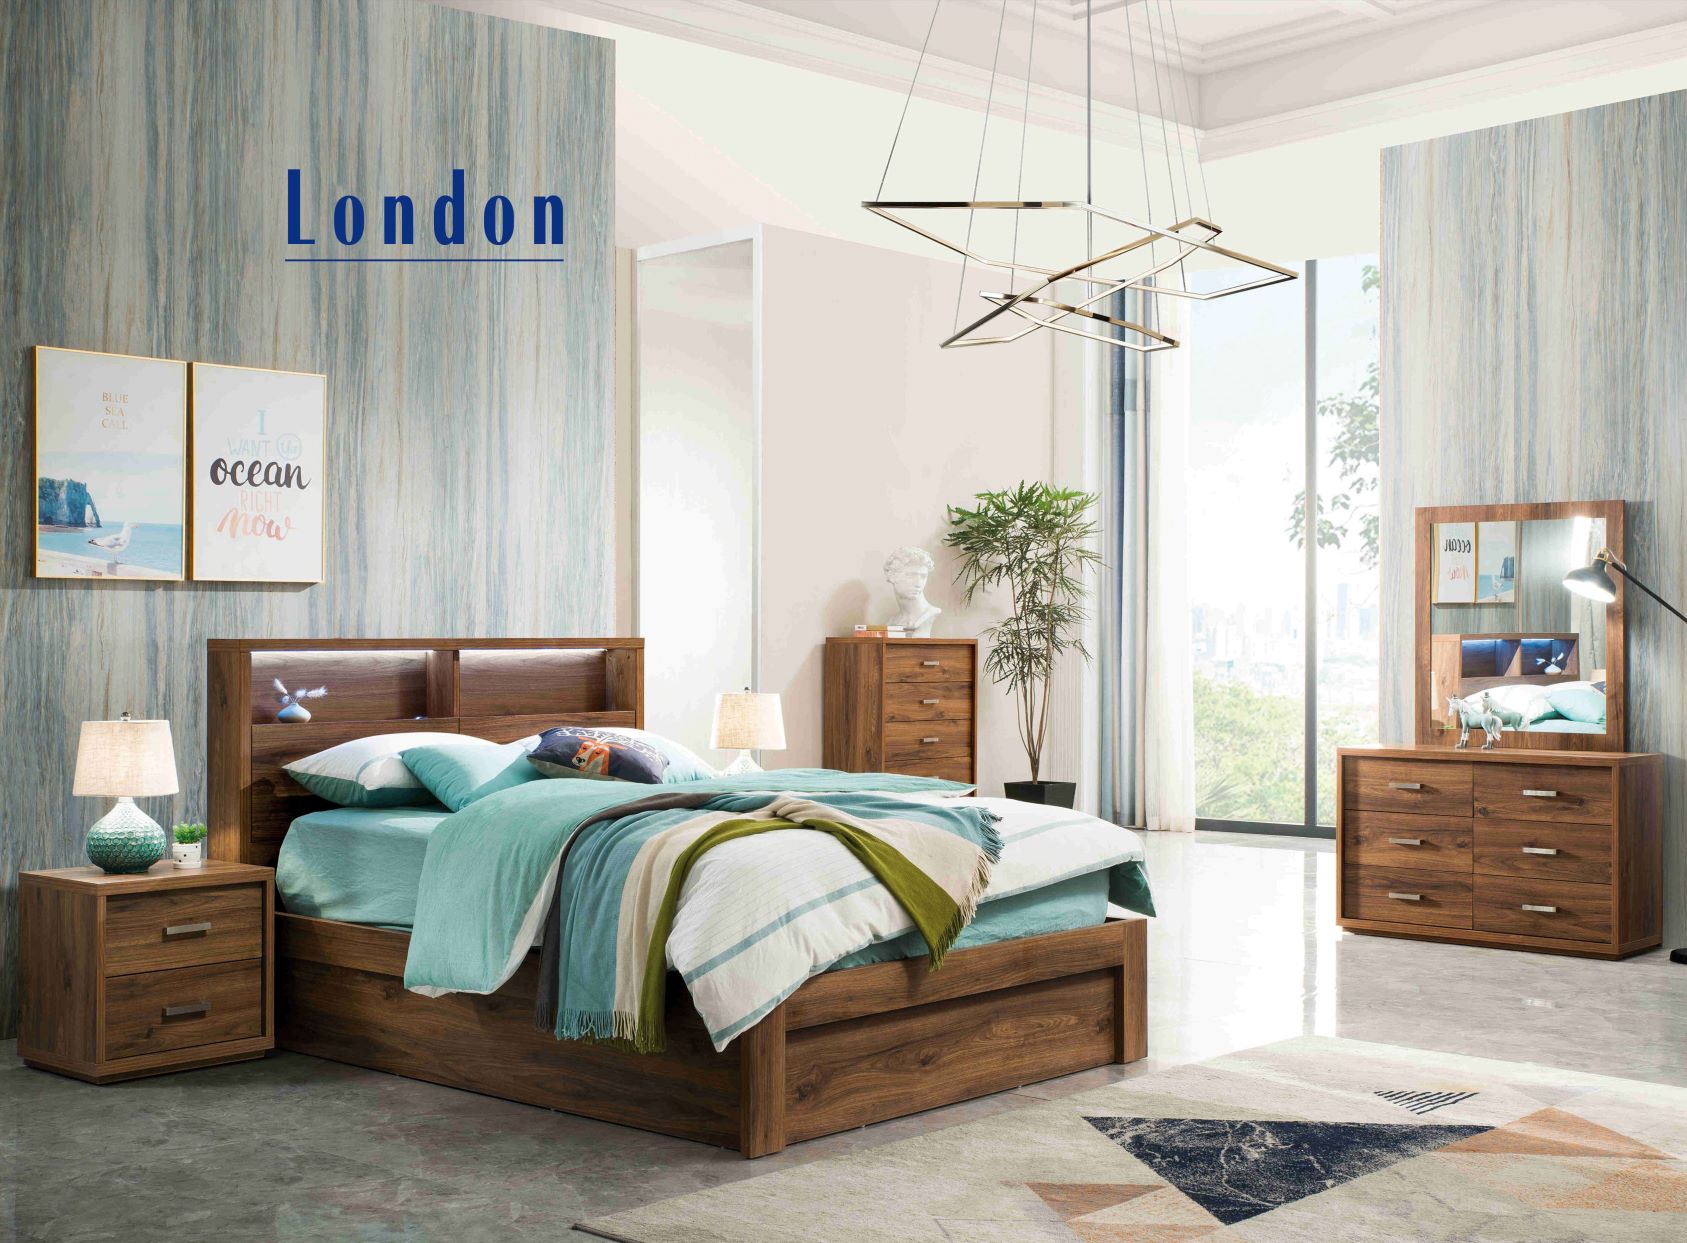 London 4 Piece Bedroom Suite